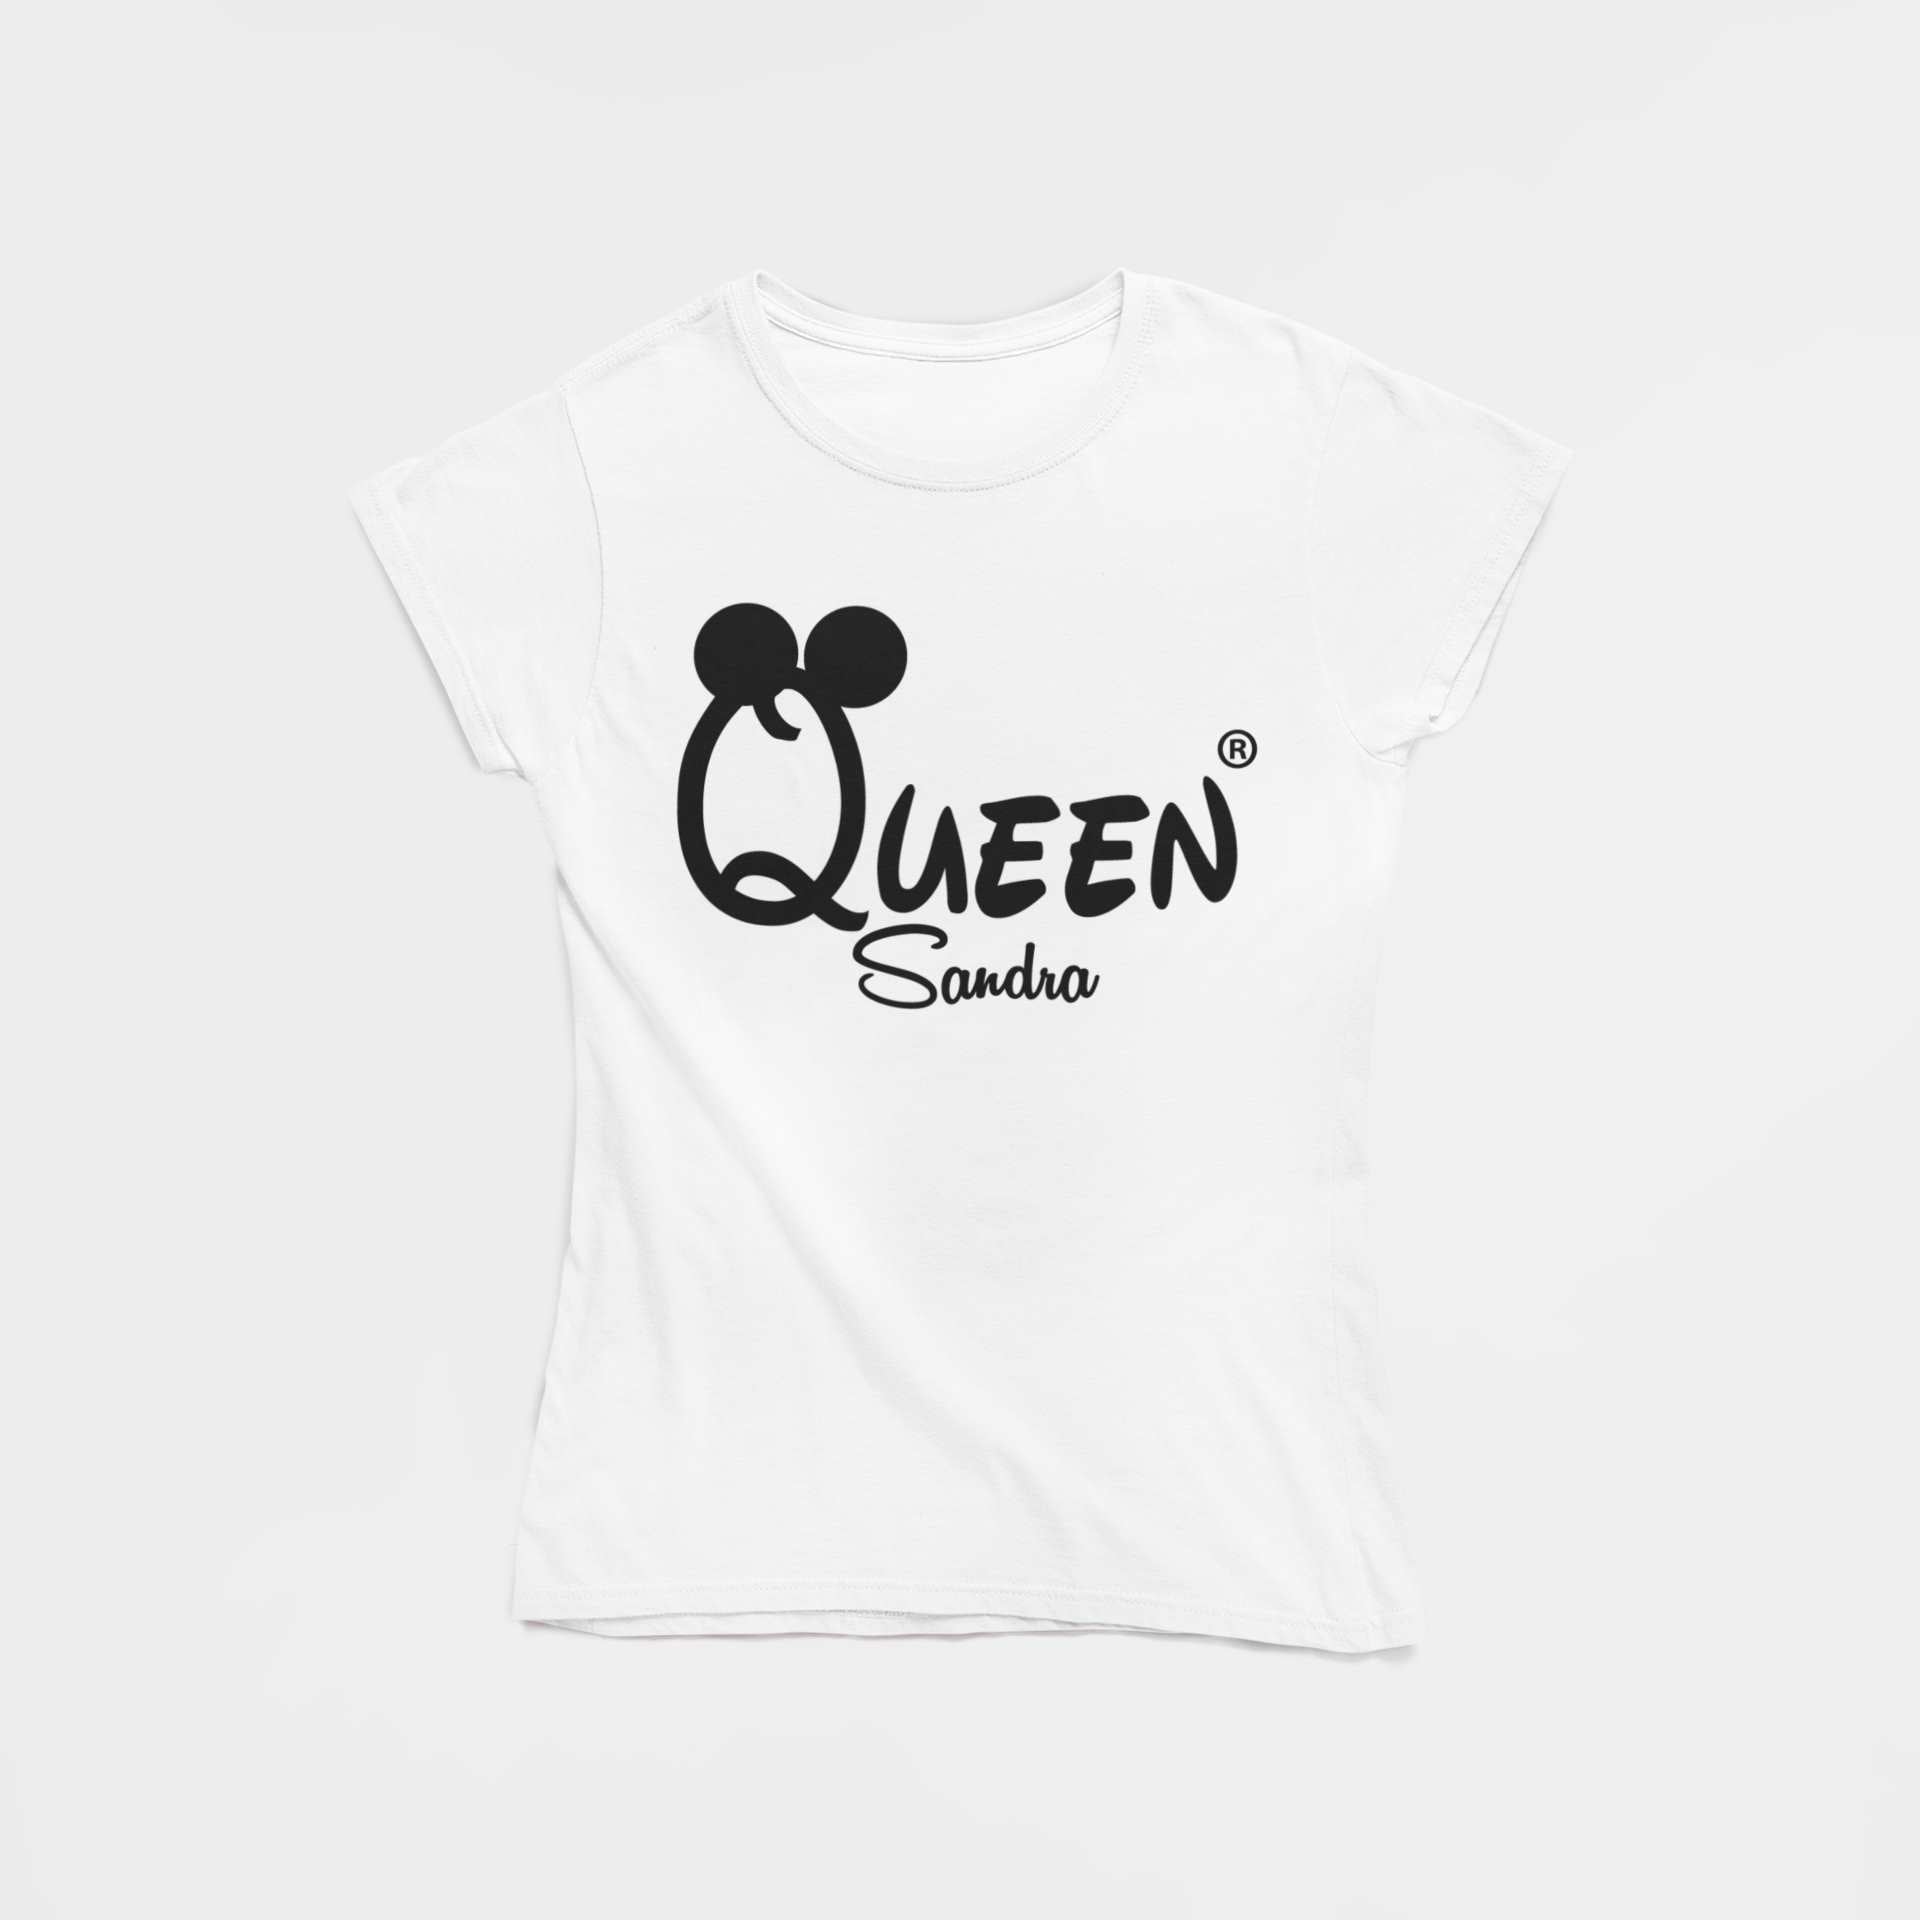 queen damen t-shirt mit Namen gestalten schwarz couplegoals partnerlook